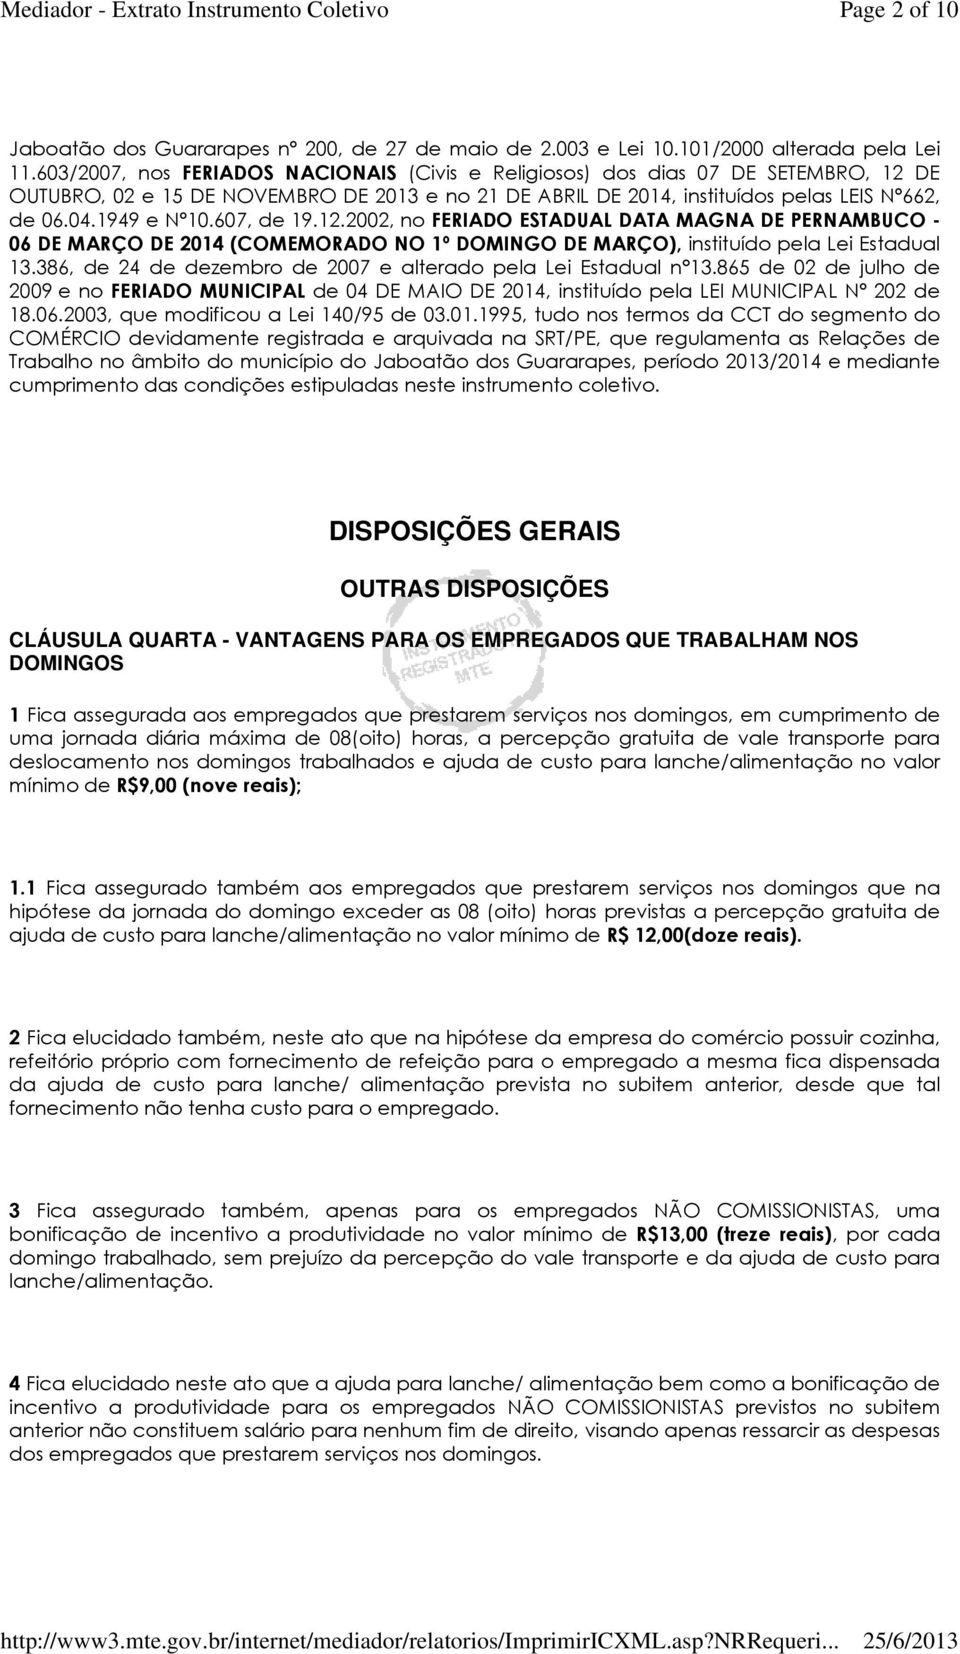 607, de 19.12.2002, no FERIADO ESTADUAL DATA MAGNA DE PERNAMBUCO - 06 DE MARÇO DE 2014 (COMEMORADO NO 1º DOMINGO DE MARÇO), instituído pela Lei Estadual 13.